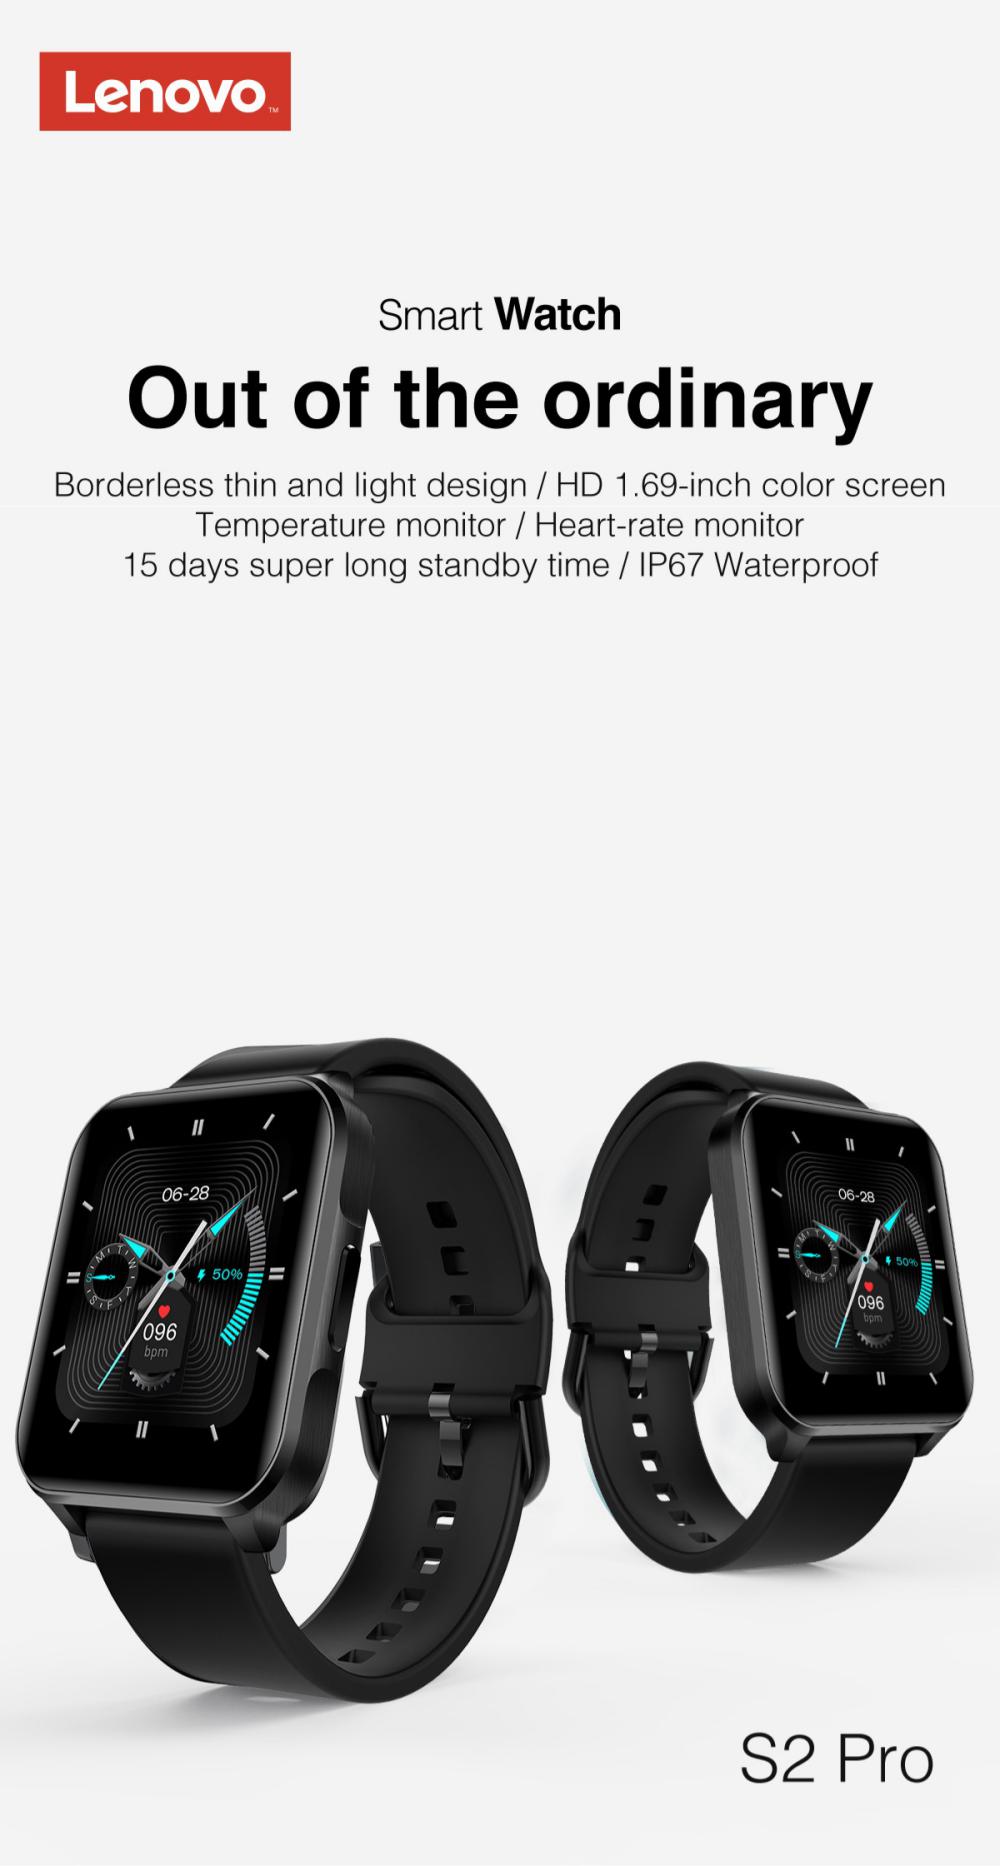 lenovo s2 pro smart watch ip67 waterproof ips full screen 1